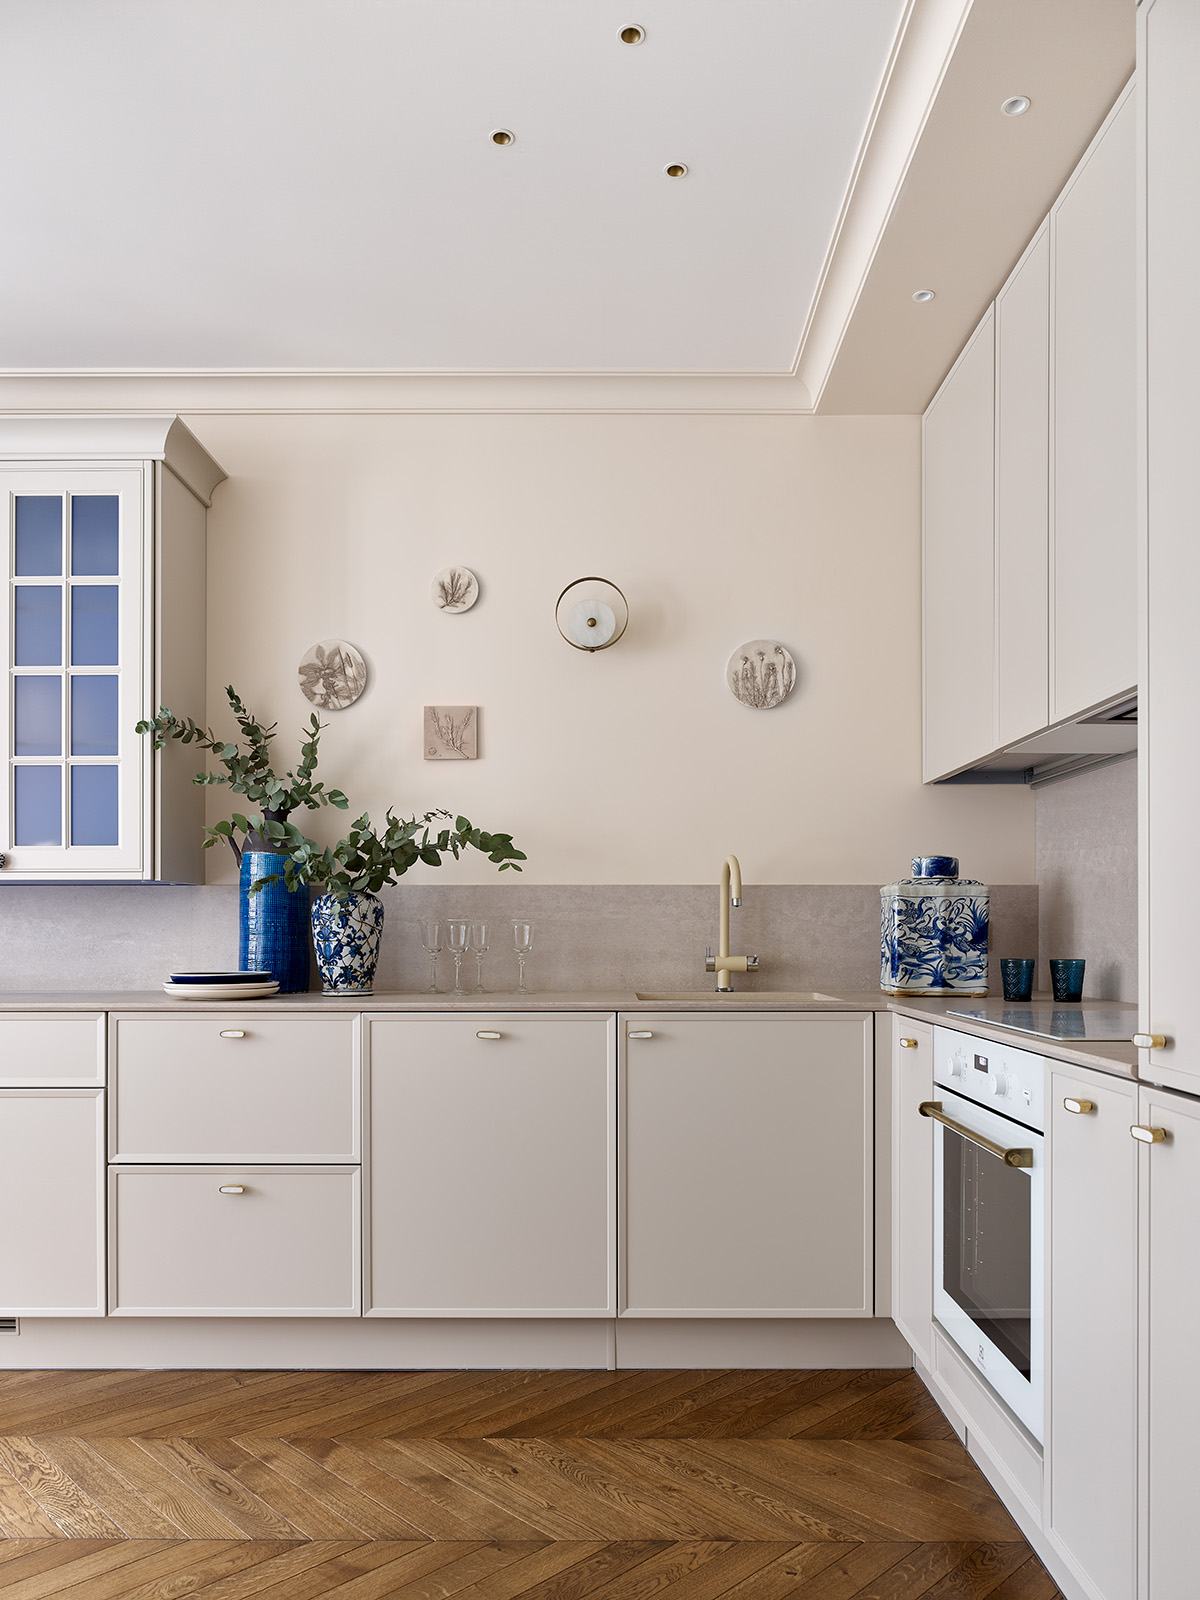 Phòng bếp lựa chọn thiết kế chữ L vừa phù hợp với cấu trúc căn hộ vừa tận dụng không gian hiệu quả. Hệ thống tủ lưu trữ trên - dưới cùng những chi tiết trang trí bằng gốm sứ hoa văn xanh lam hay tranh treo tường cho khu vực nấu nướng trở nên thi vị.